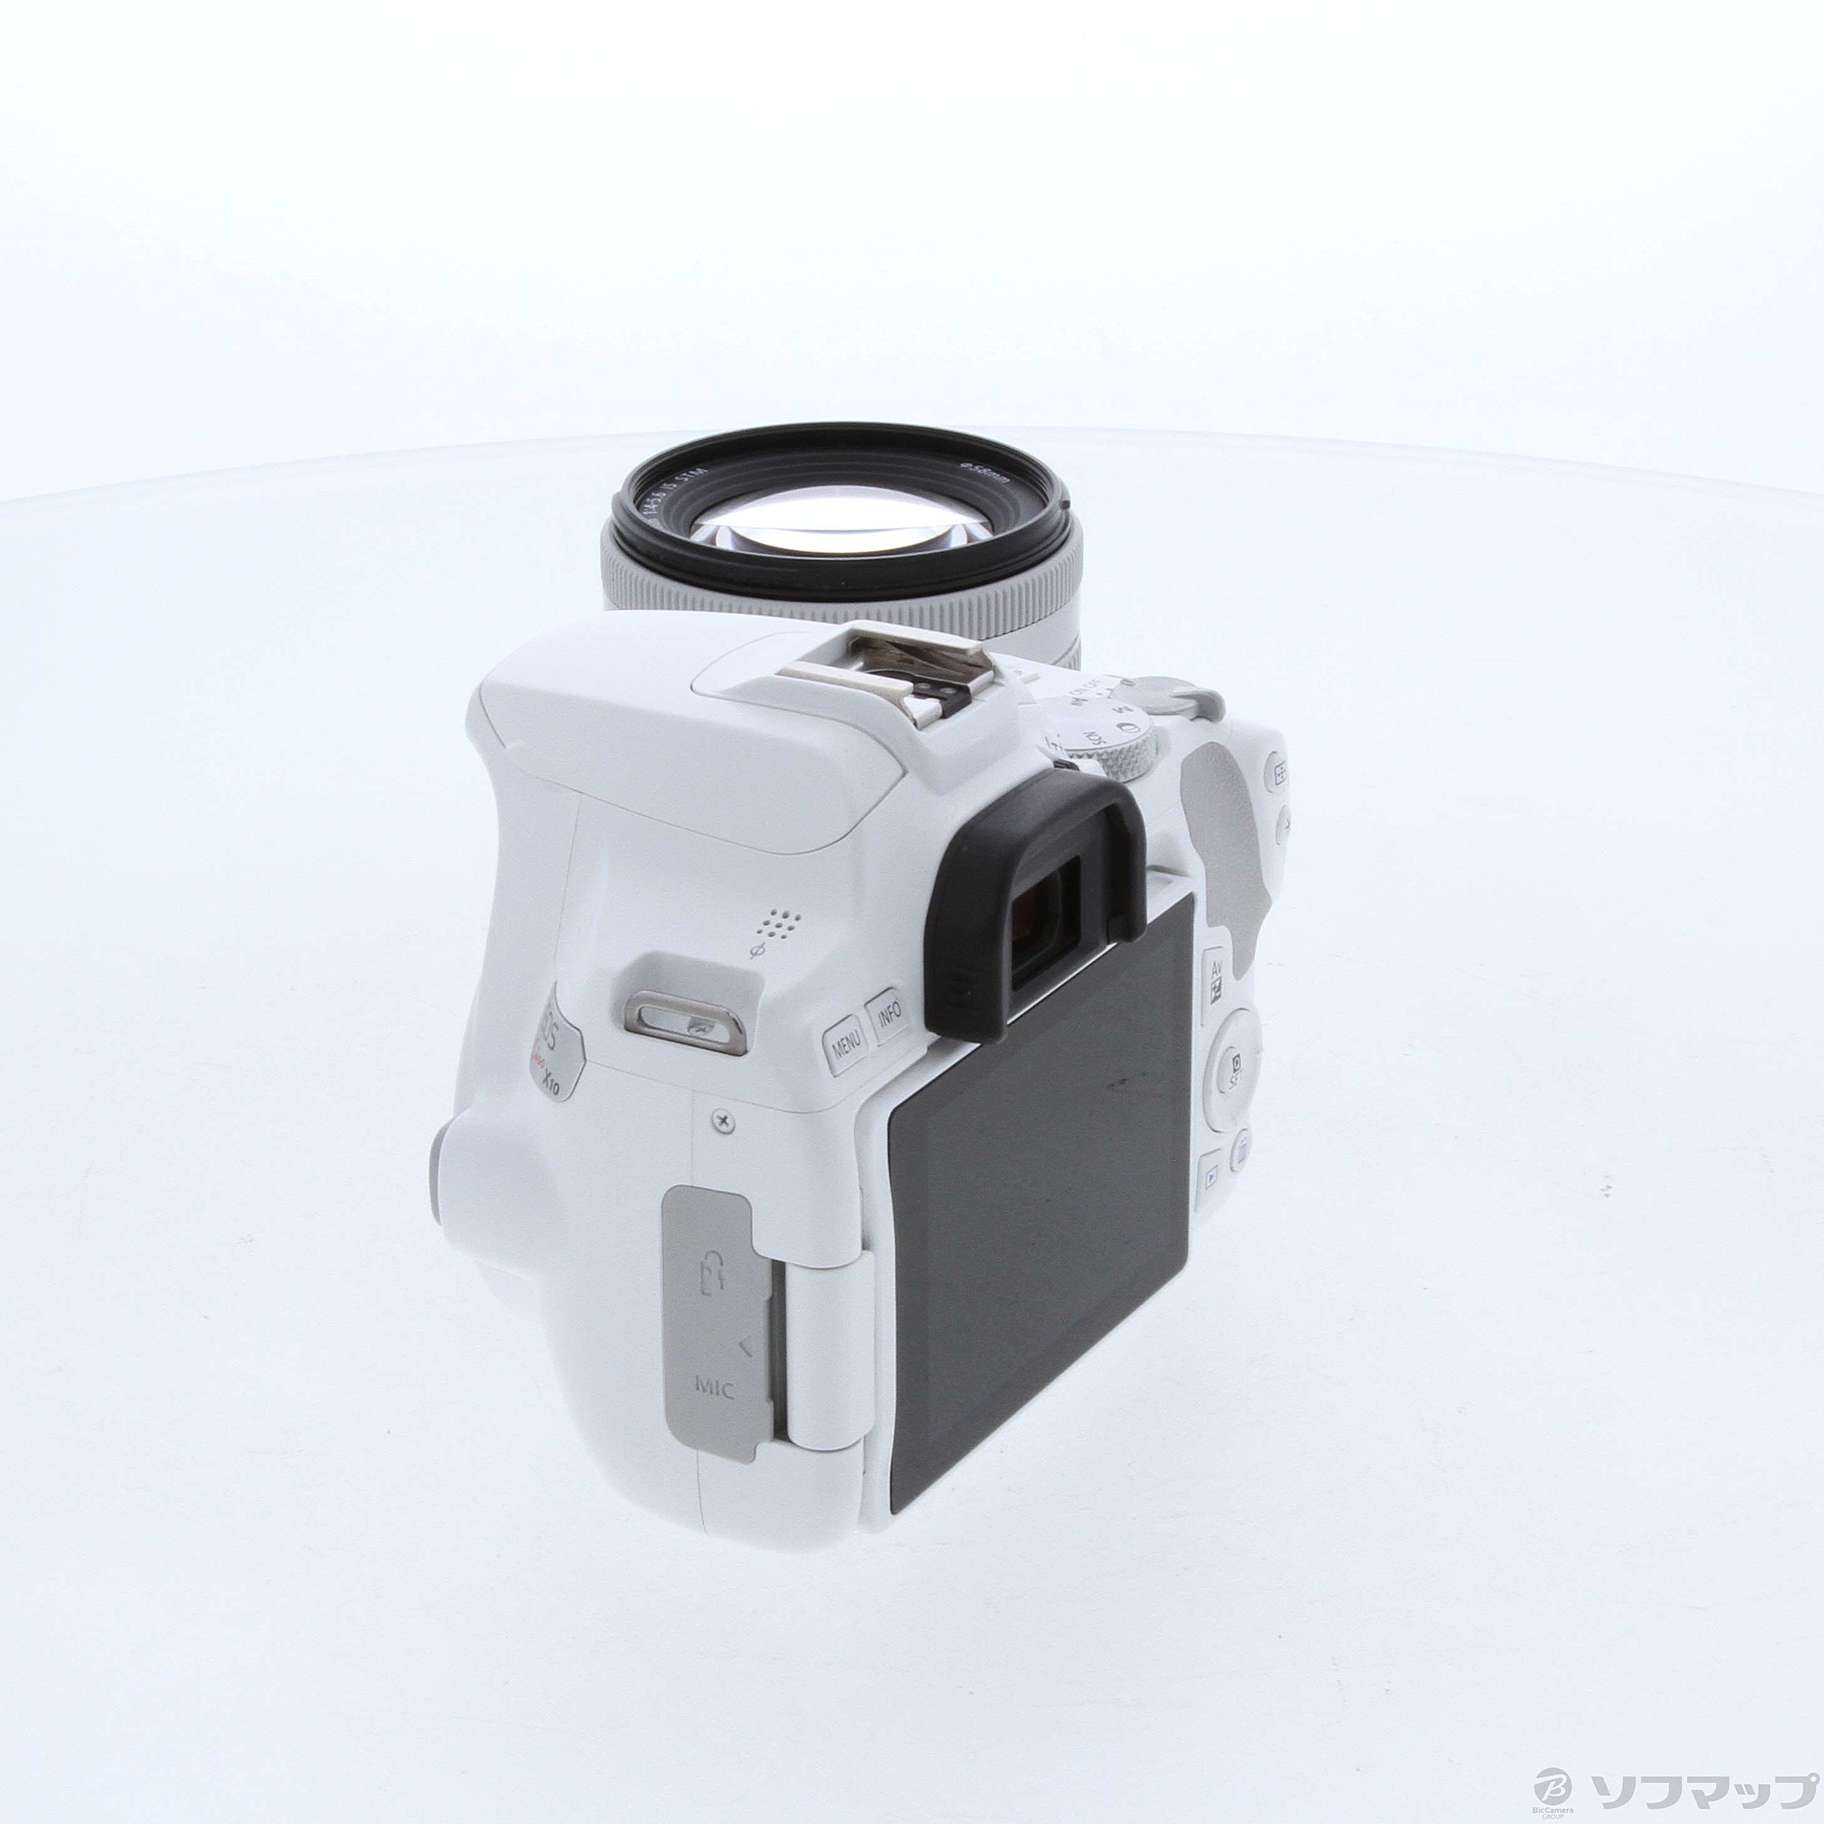 中古】〔展示品〕 EOS Kiss X10 (ホワイト) EF-S18-55 IS STM レンズ 